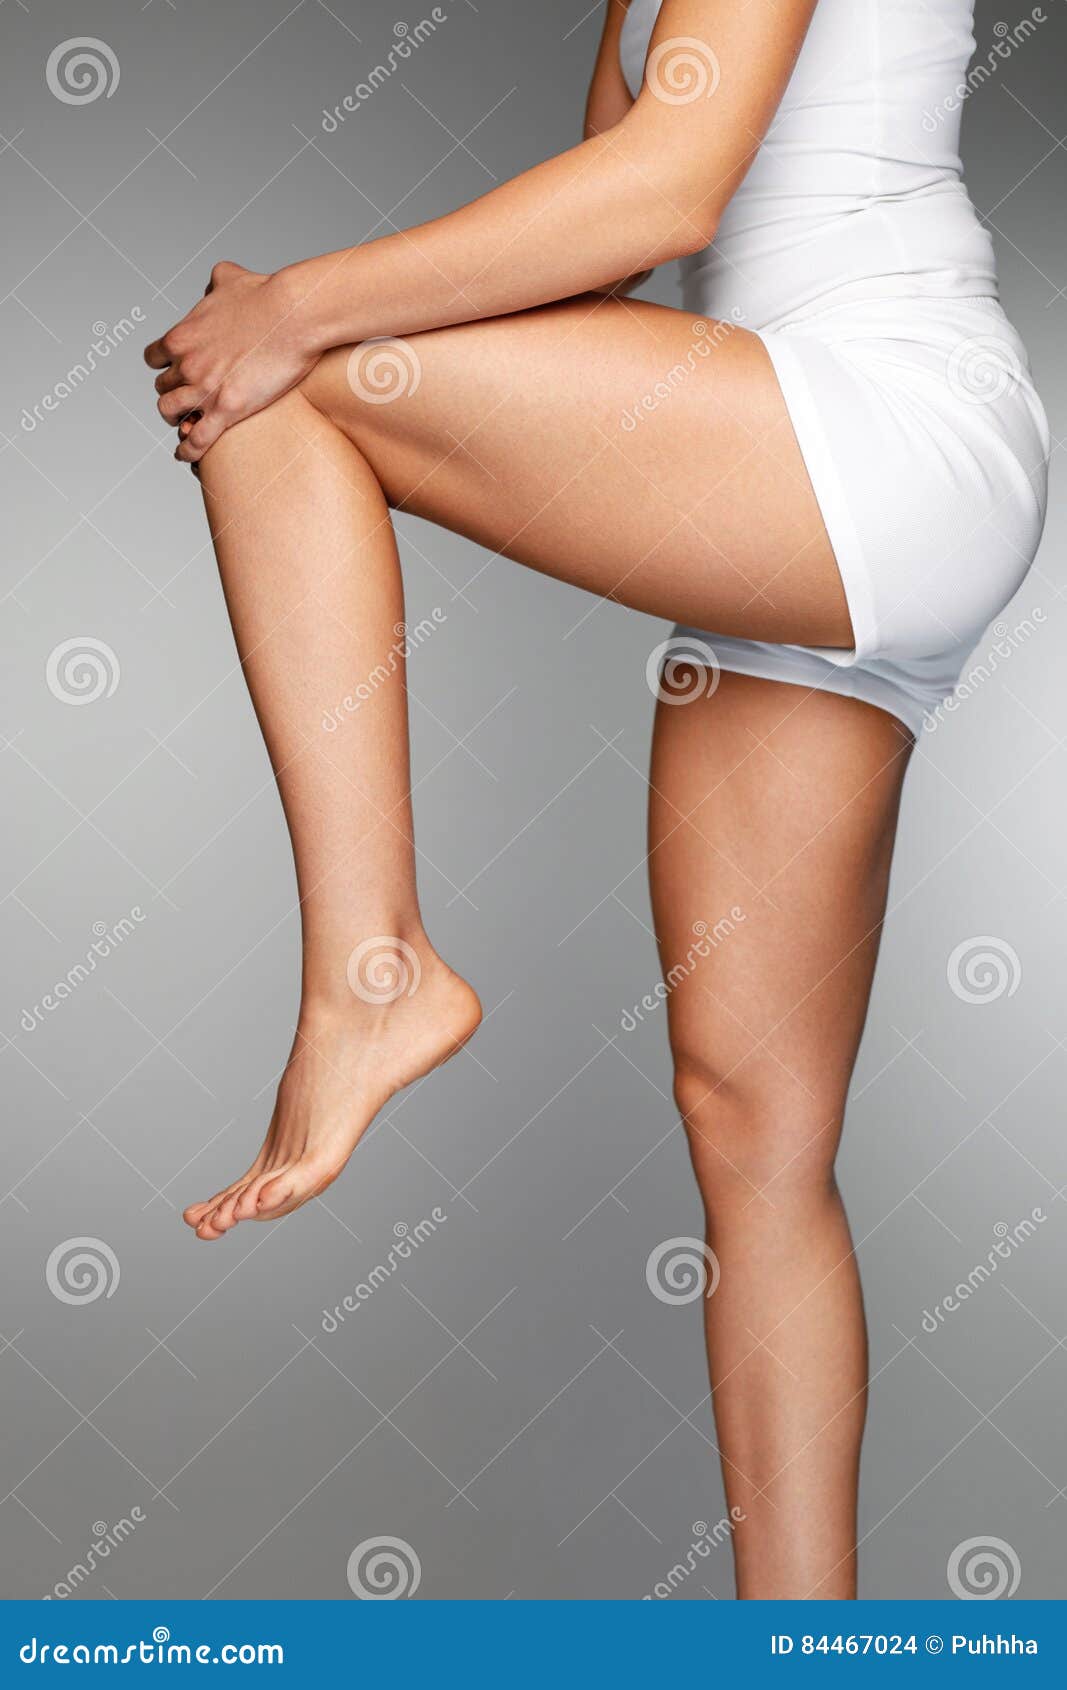 Смачные эро фото голых девушек с кривыми ногами